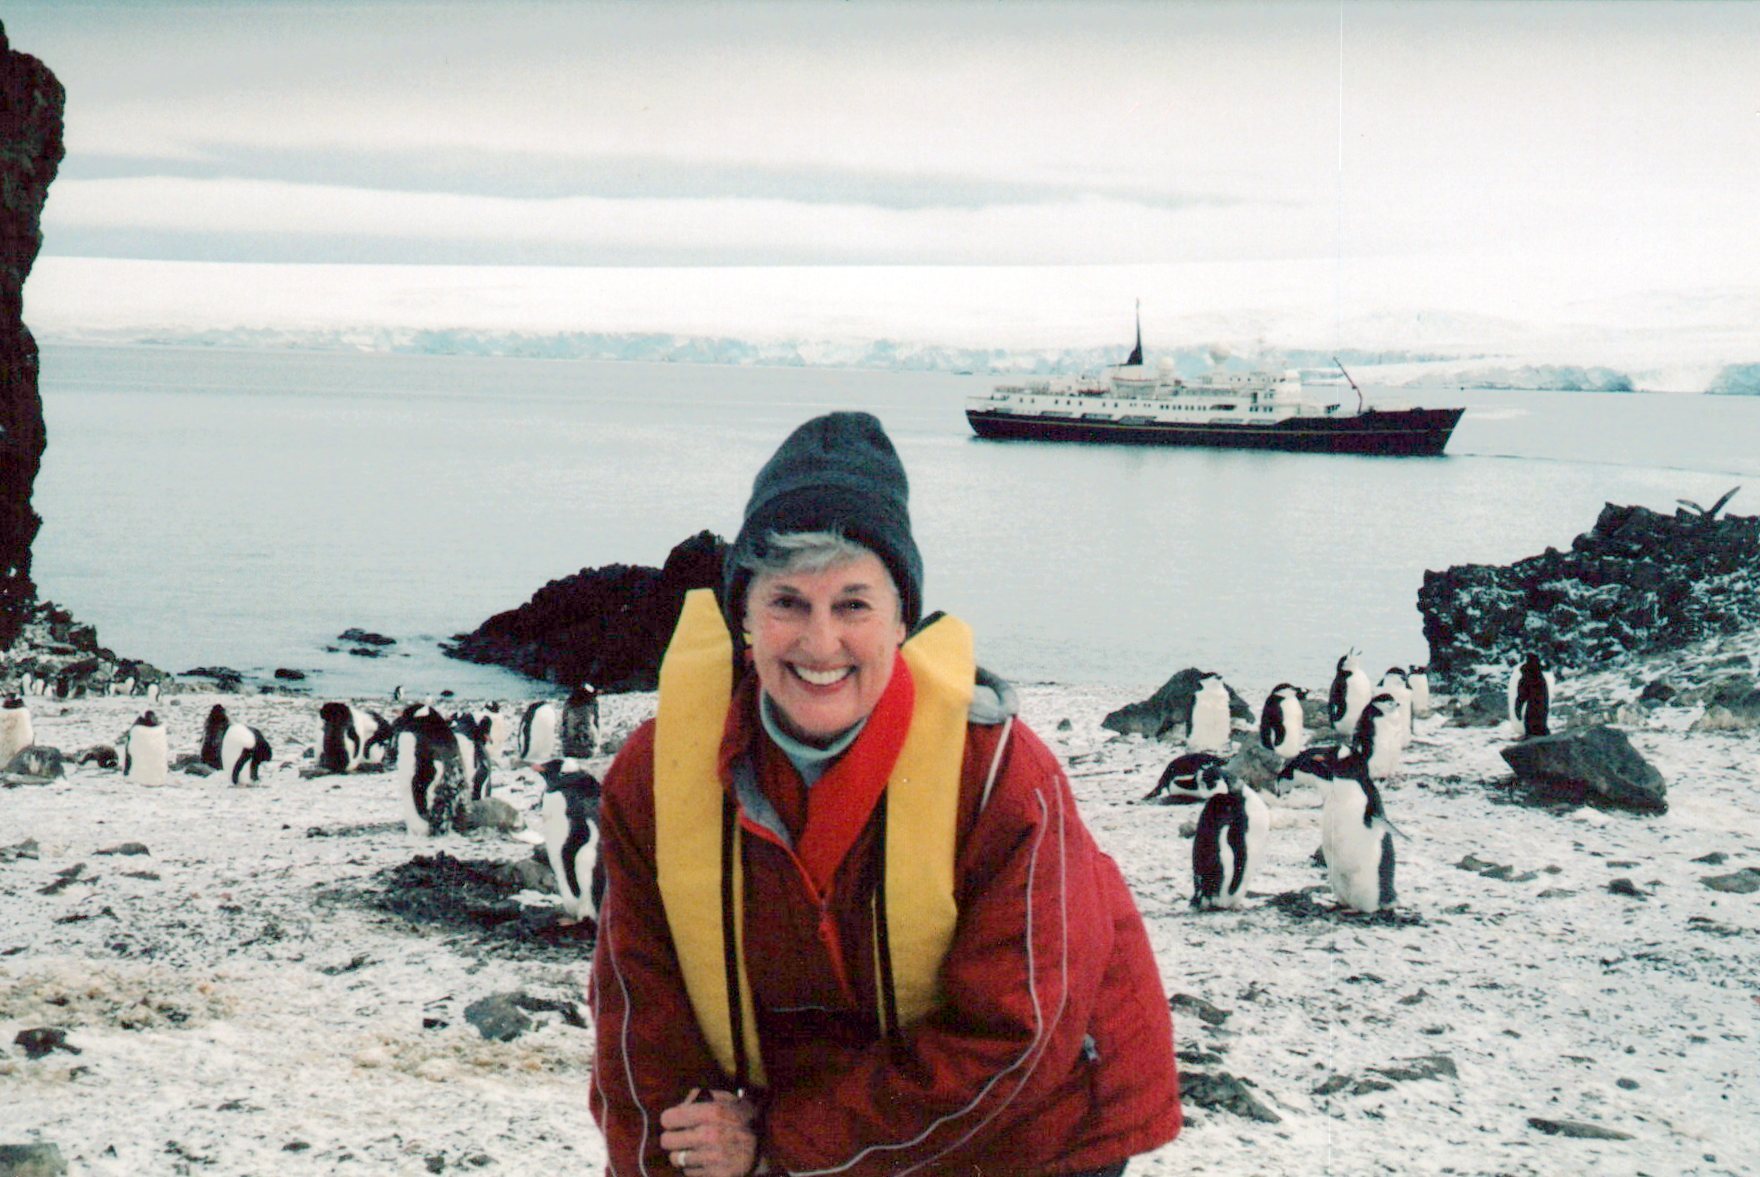 Sonja Behnke Festerling with the penguins